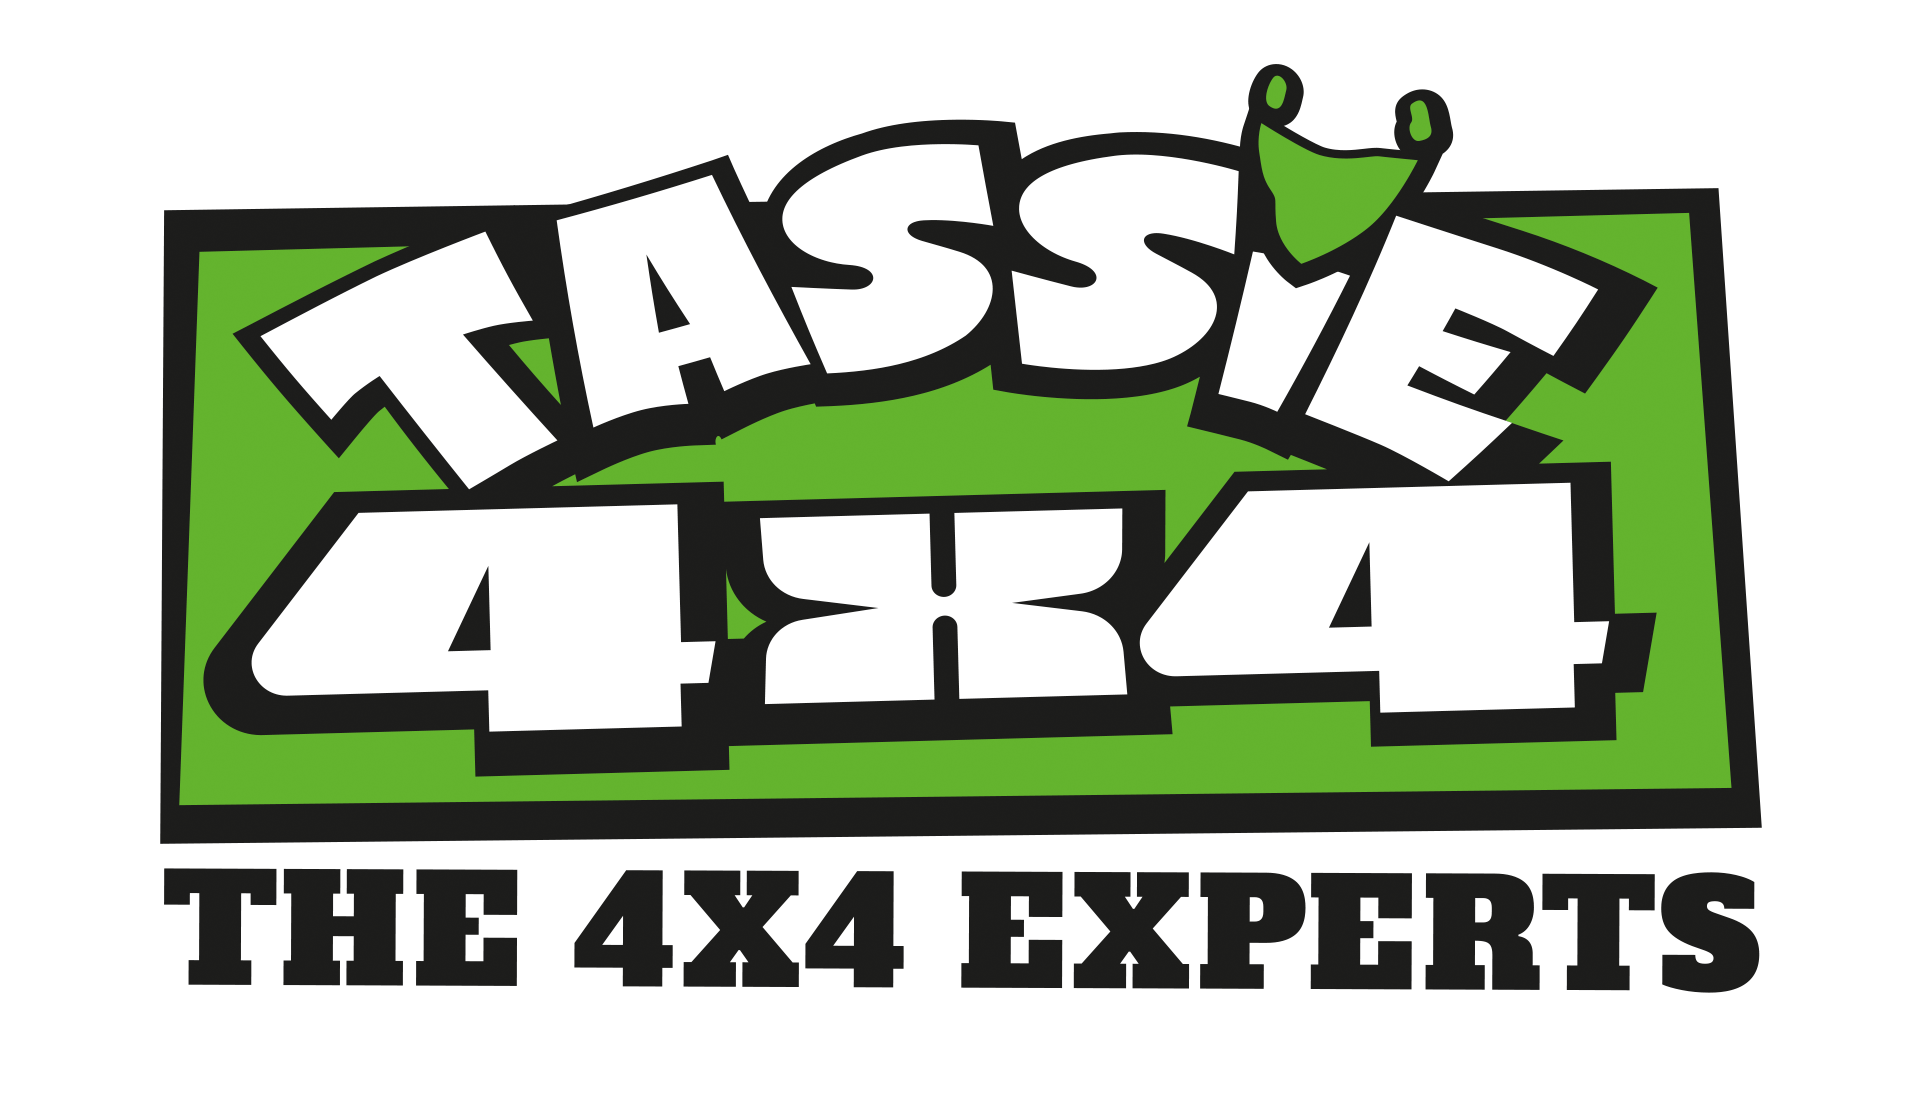 Tassie 4 x 4